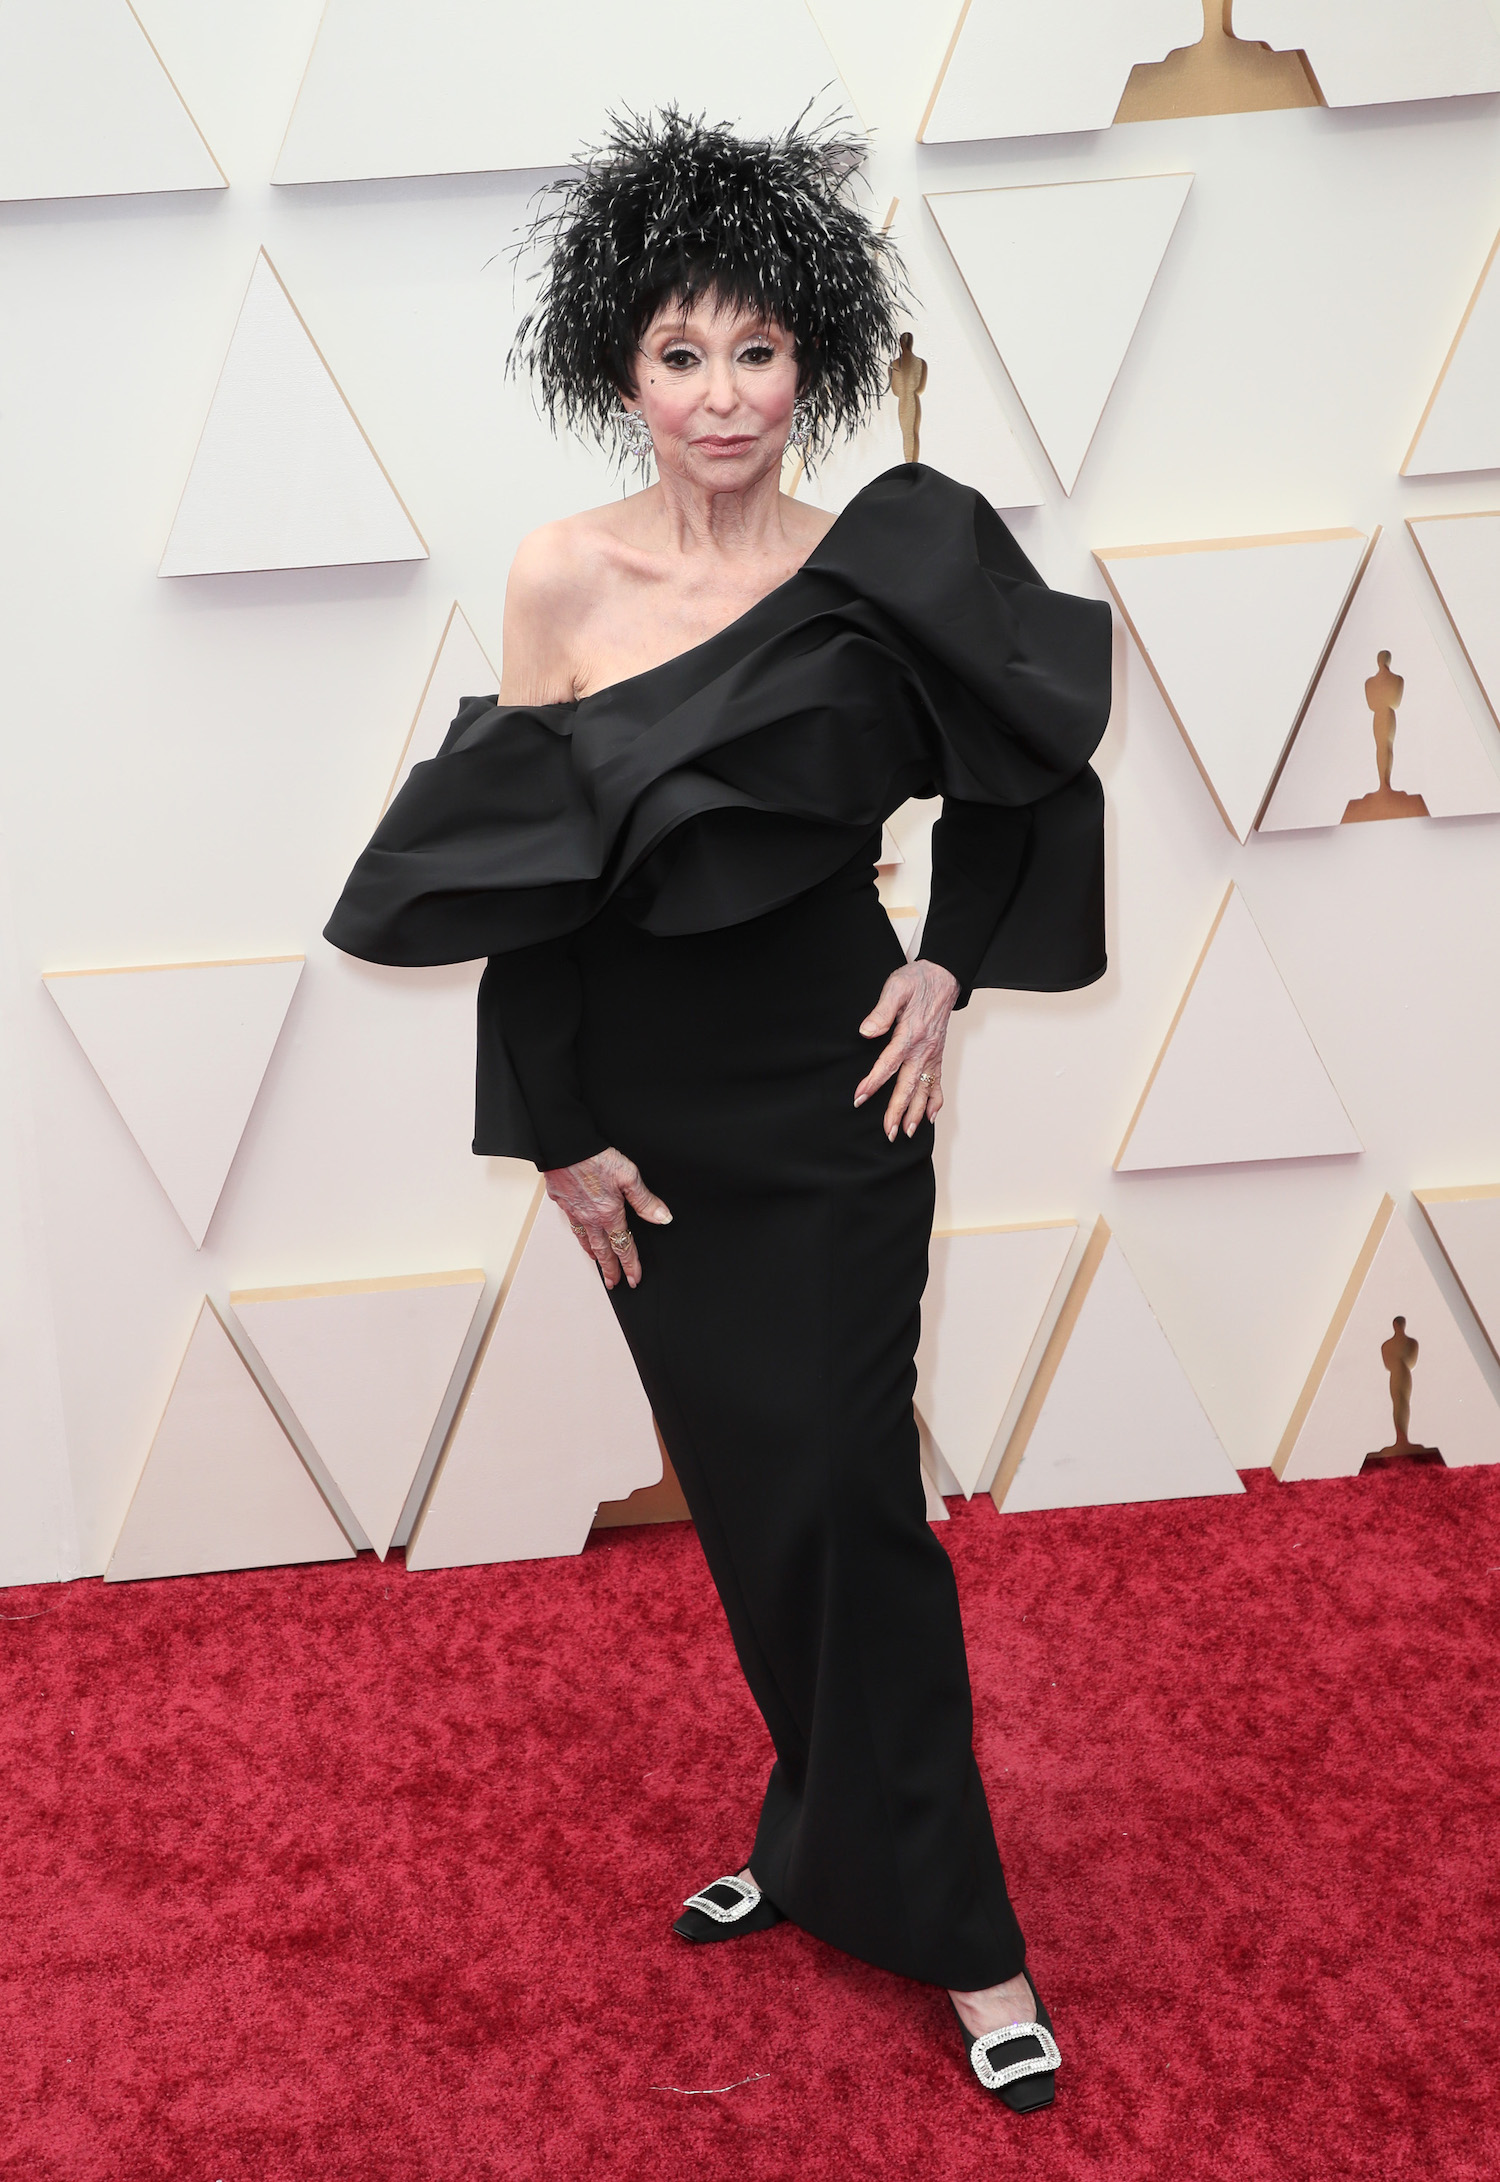 Rita Moreno at the Oscars 2022